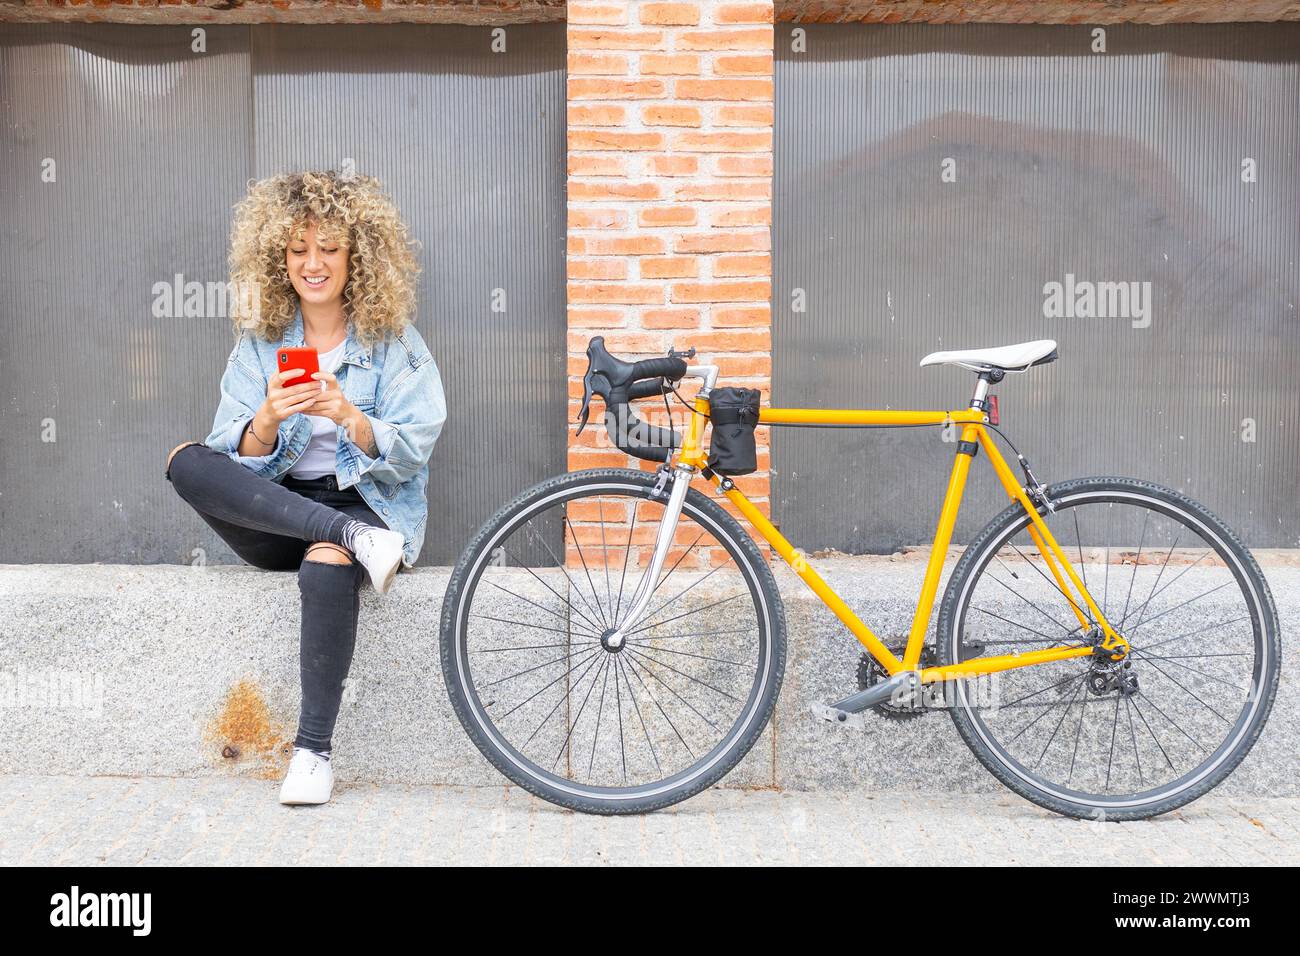 giovane donna caucasica con capelli biondi ricci, sorridente, che chiacchiera con il suo smartphone rosso e la sua classica bicicletta gialla Foto Stock